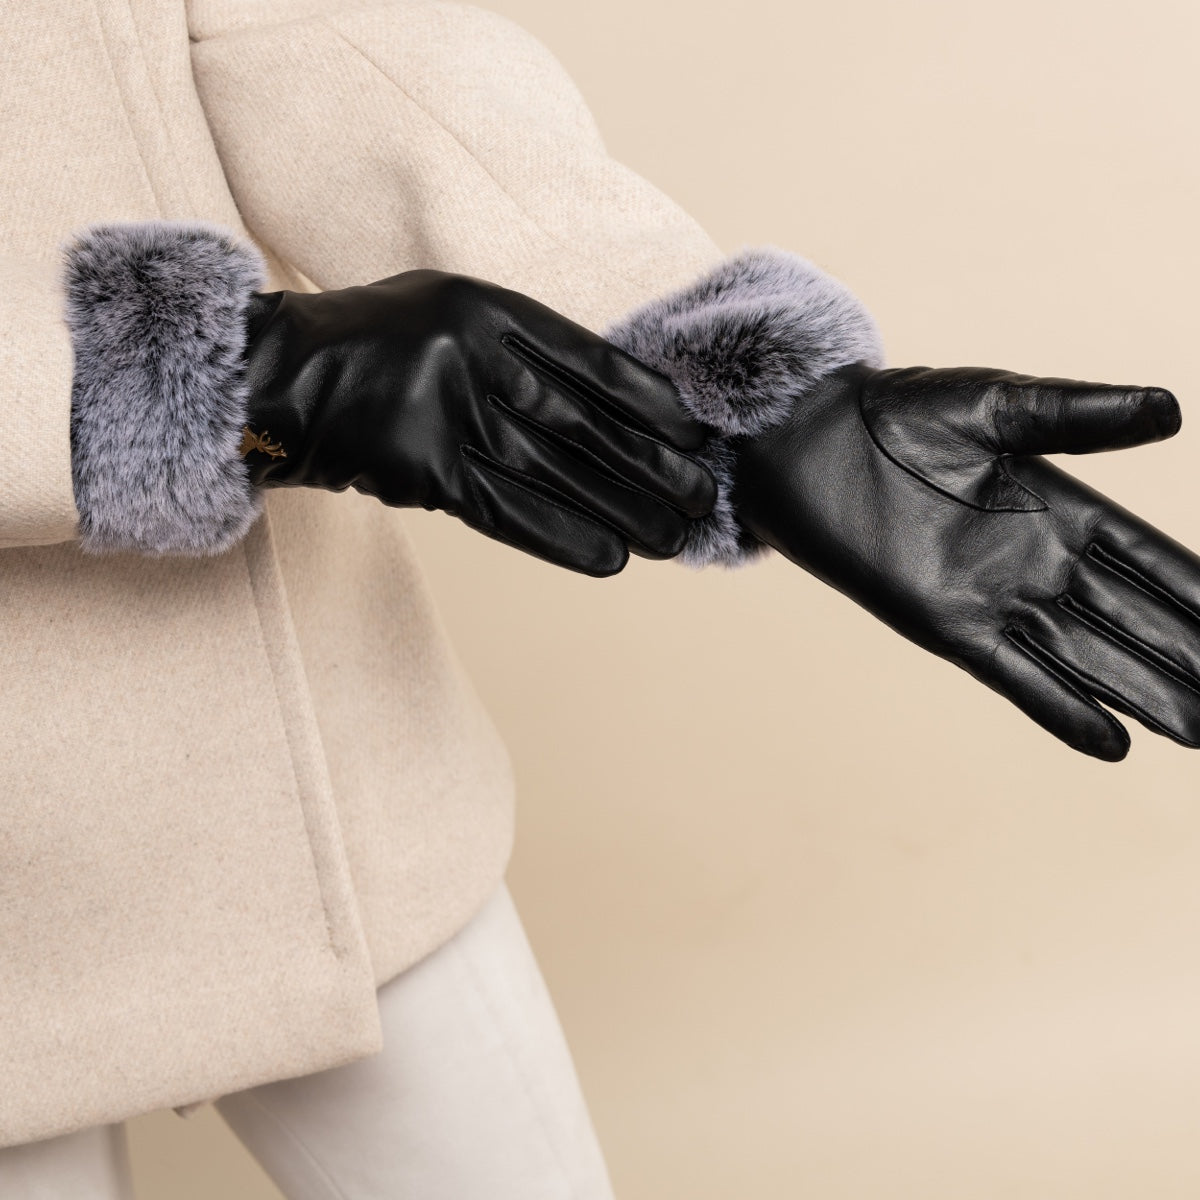 Luxury Leather Gloves Black Women Vera - Schwartz & von Halen® - Premium Leather Gloves - 12